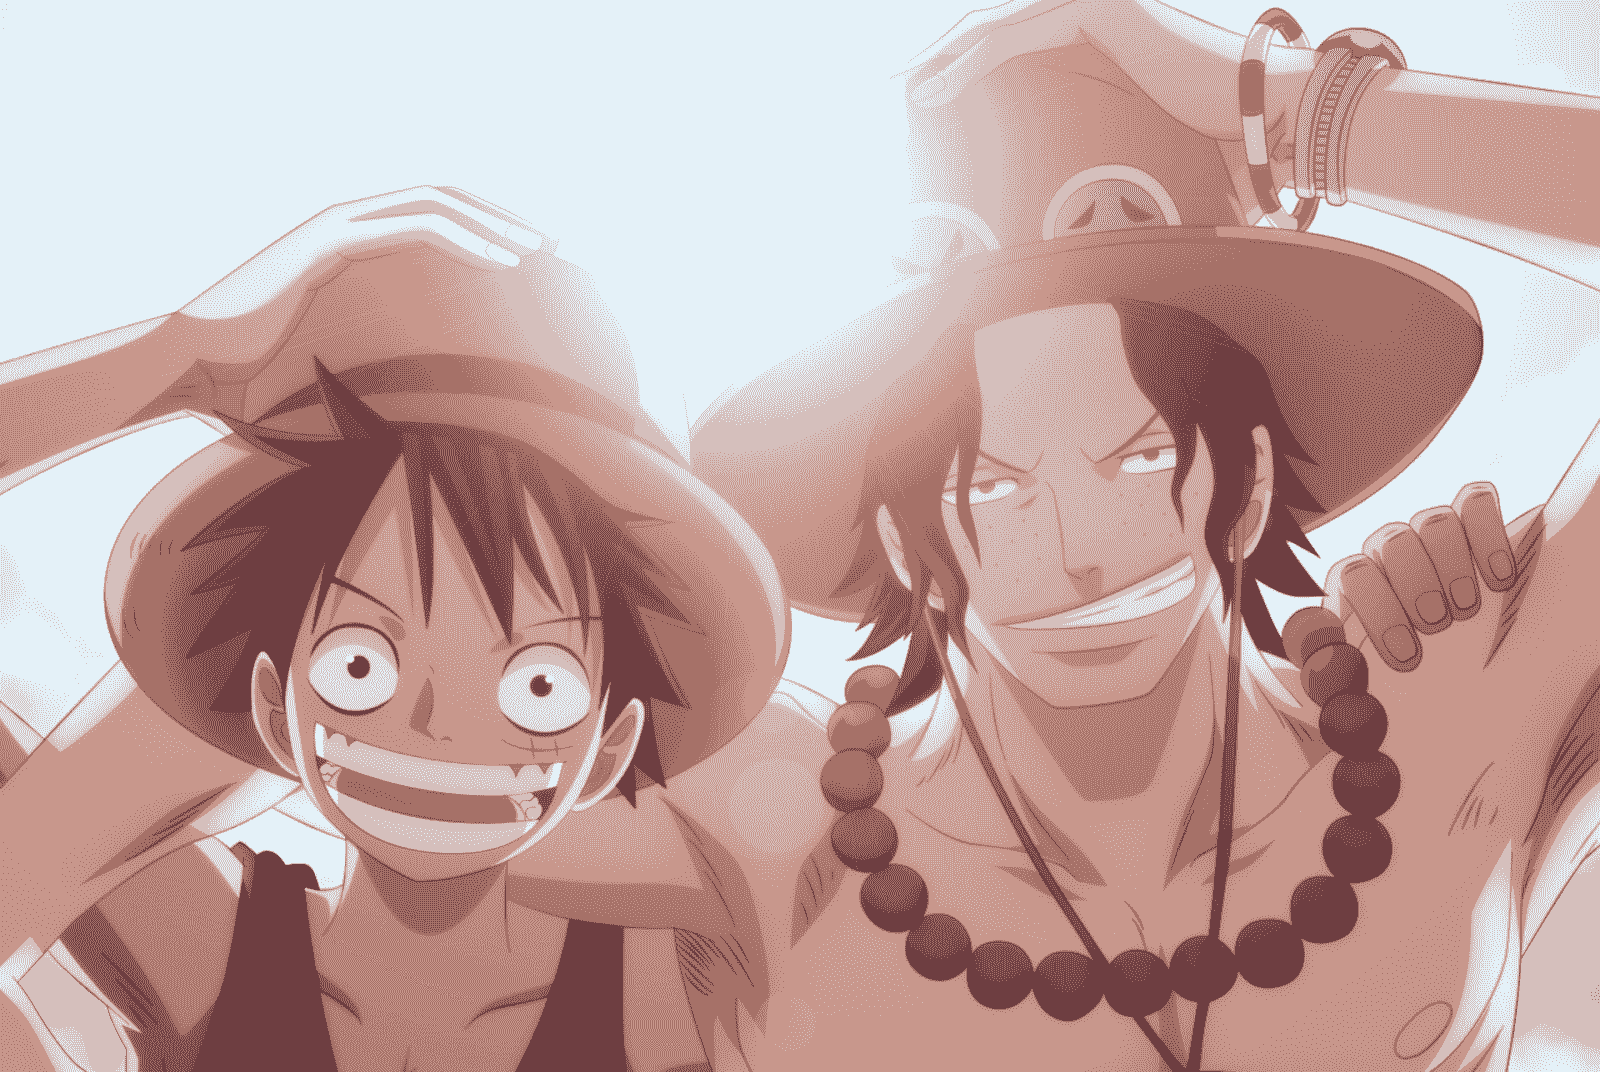 Hình ảnh đầy ấn tượng của Ace trong bộ truyện One Piece, sẽ mang đến cho bạn niềm đam mê và kích thích cảm xúc vô hạn. Đắm chìm trong thế giới đầy màu sắc cùng Ace, và cảm nhận sự anh hùng và quyết tâm của anh chàng này.